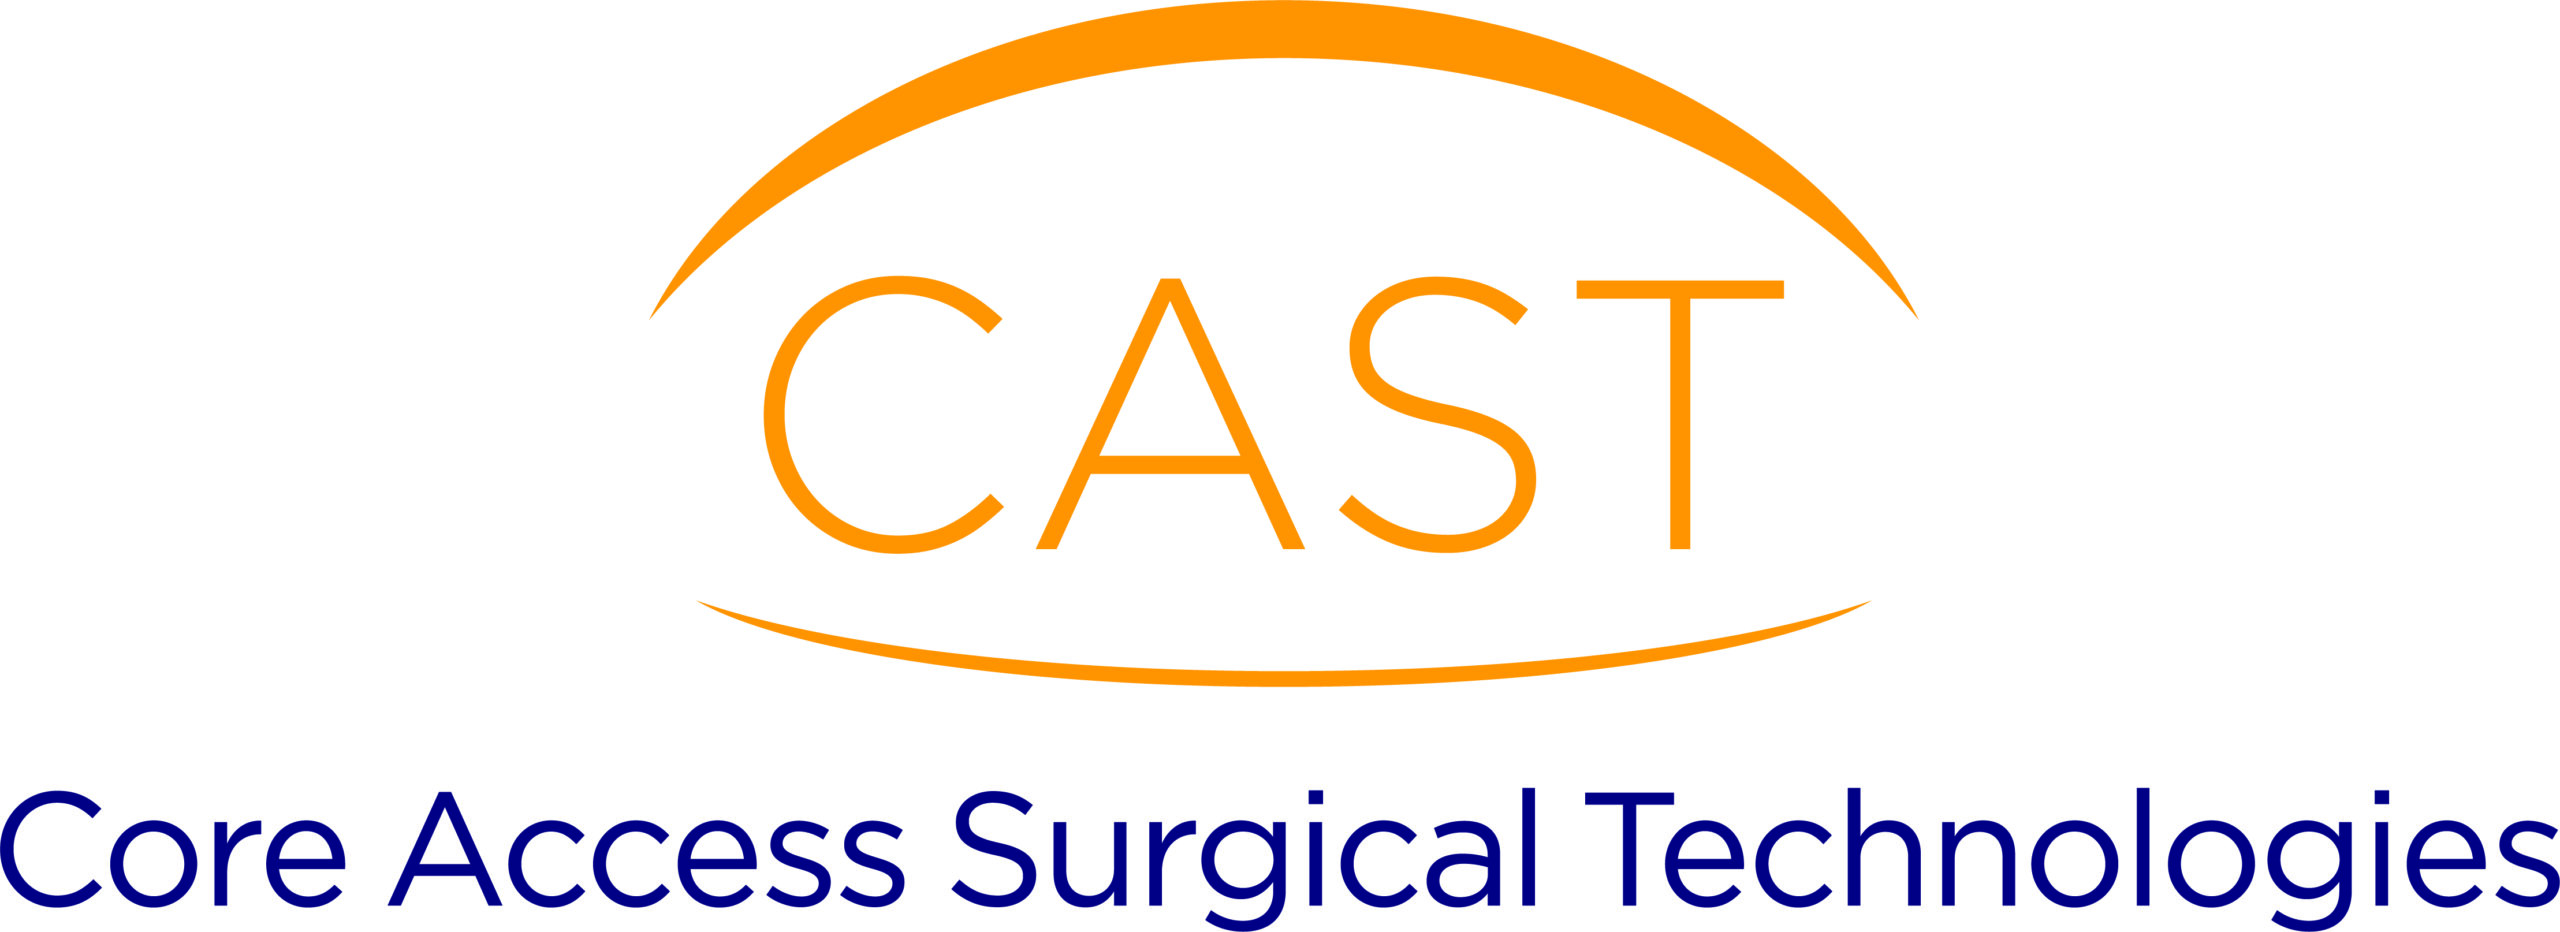 CAST Core Access Surgical Technologies Orange